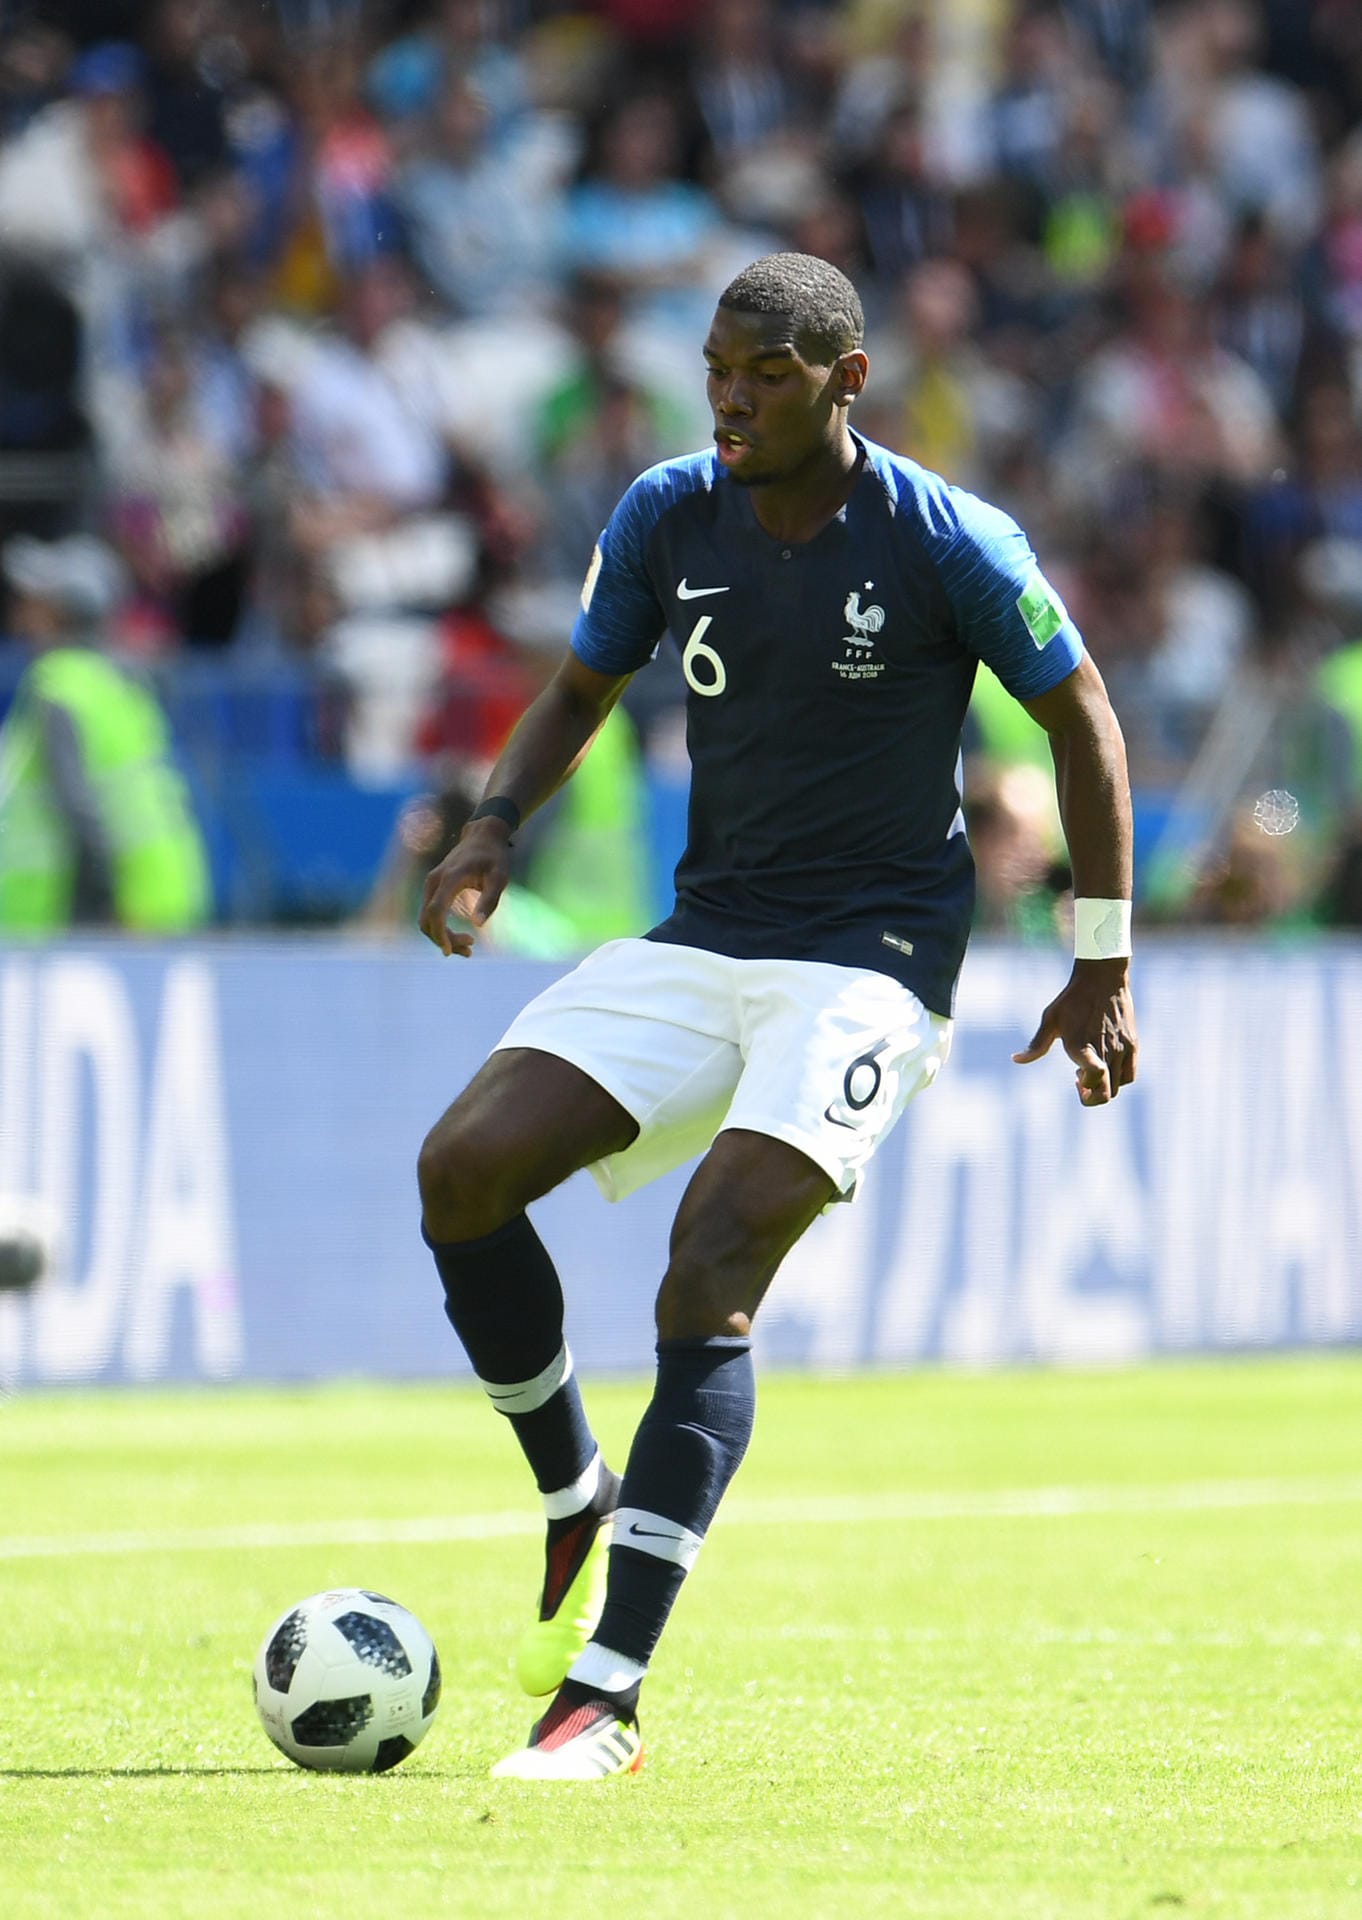 Paul Pogba: Die Frisur des französischen Fußballers ist überraschend unauffällig. Eigentlich zeigt sich der 25-Jährige am liebsten mit knalligen Farben und aufwendiger Rasur.